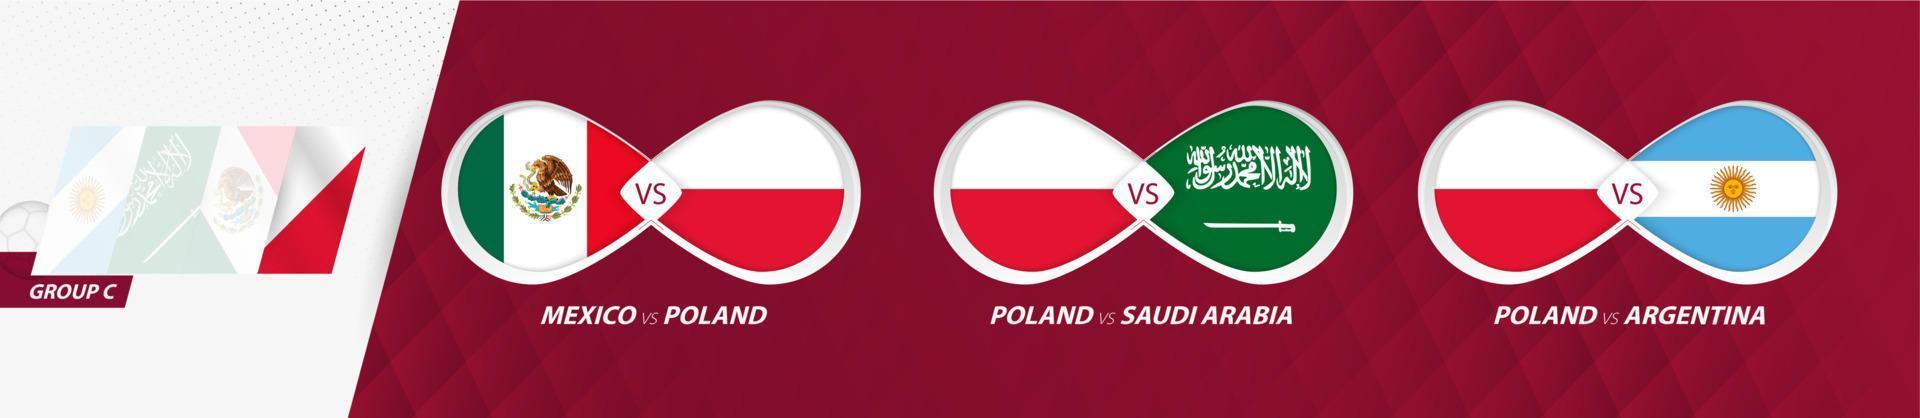 polnische nationalmannschaftsspiele in gruppe c, fußballwettbewerb 2022, alle spiele symbol in der gruppenphase. vektor